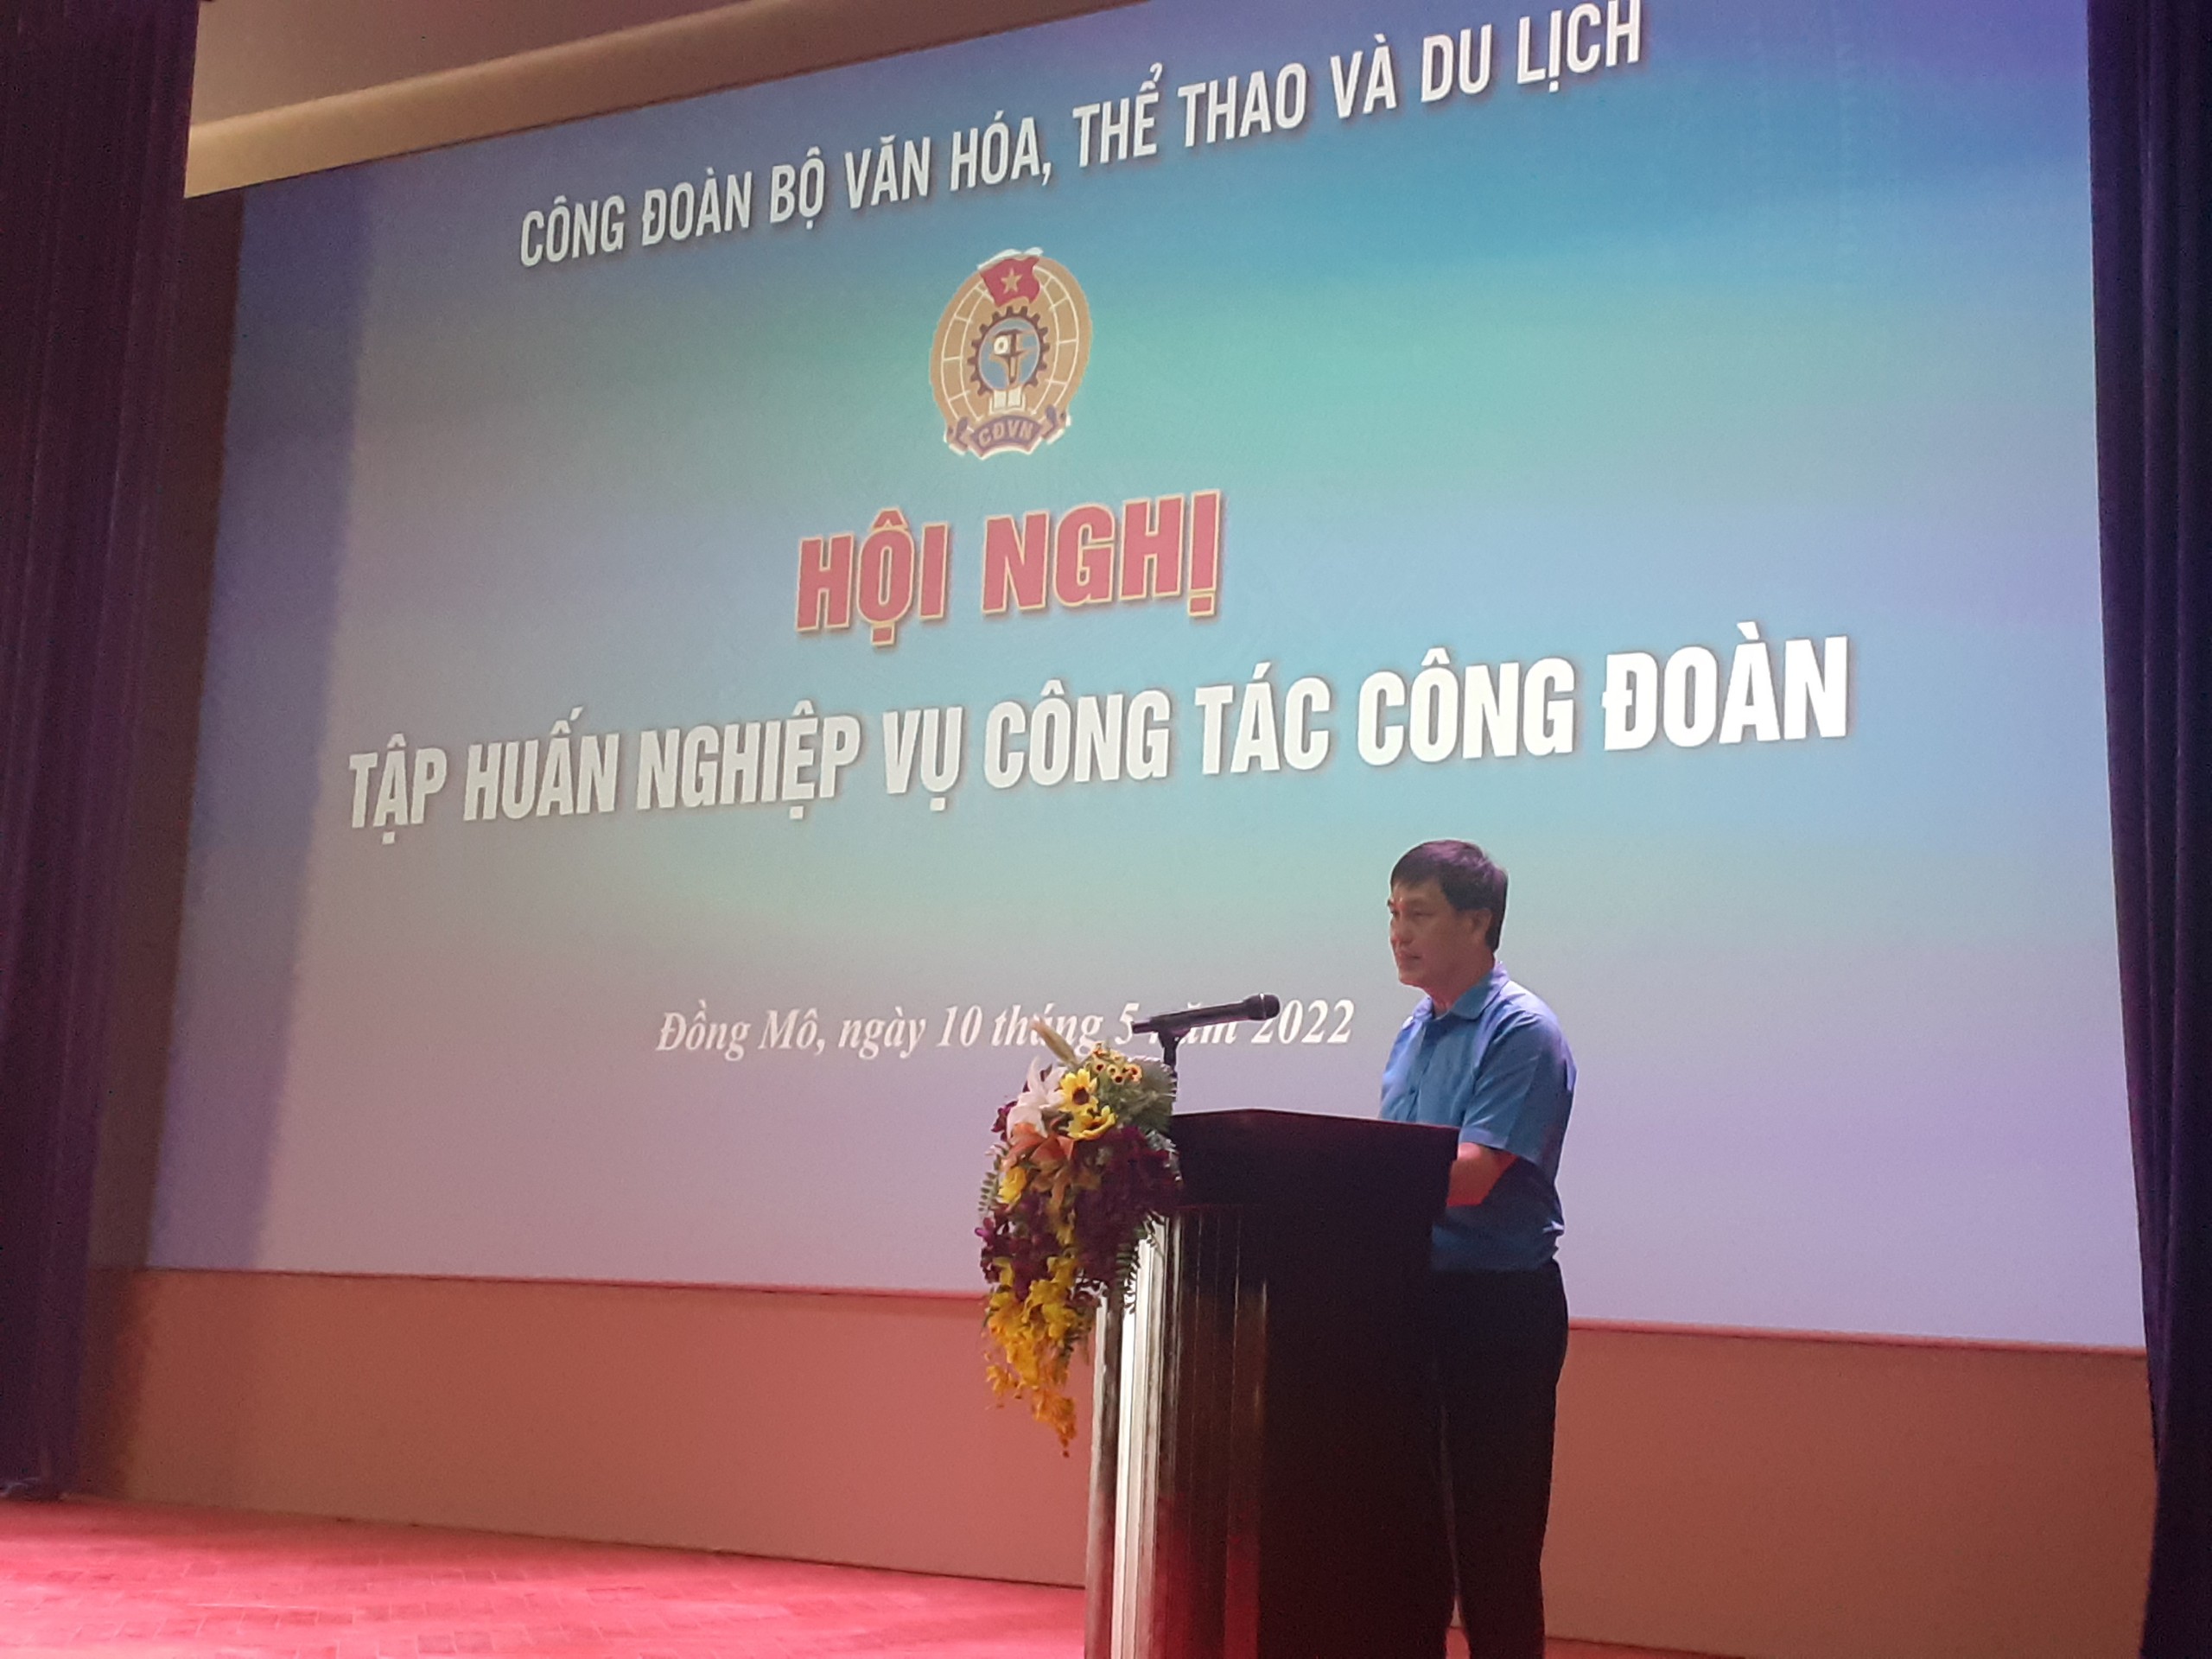 Ông Trần Huy Toản – Phó Chủ tịch Công đoàn Bộ VHTTDL phát biểu khai mạc Hội nghị